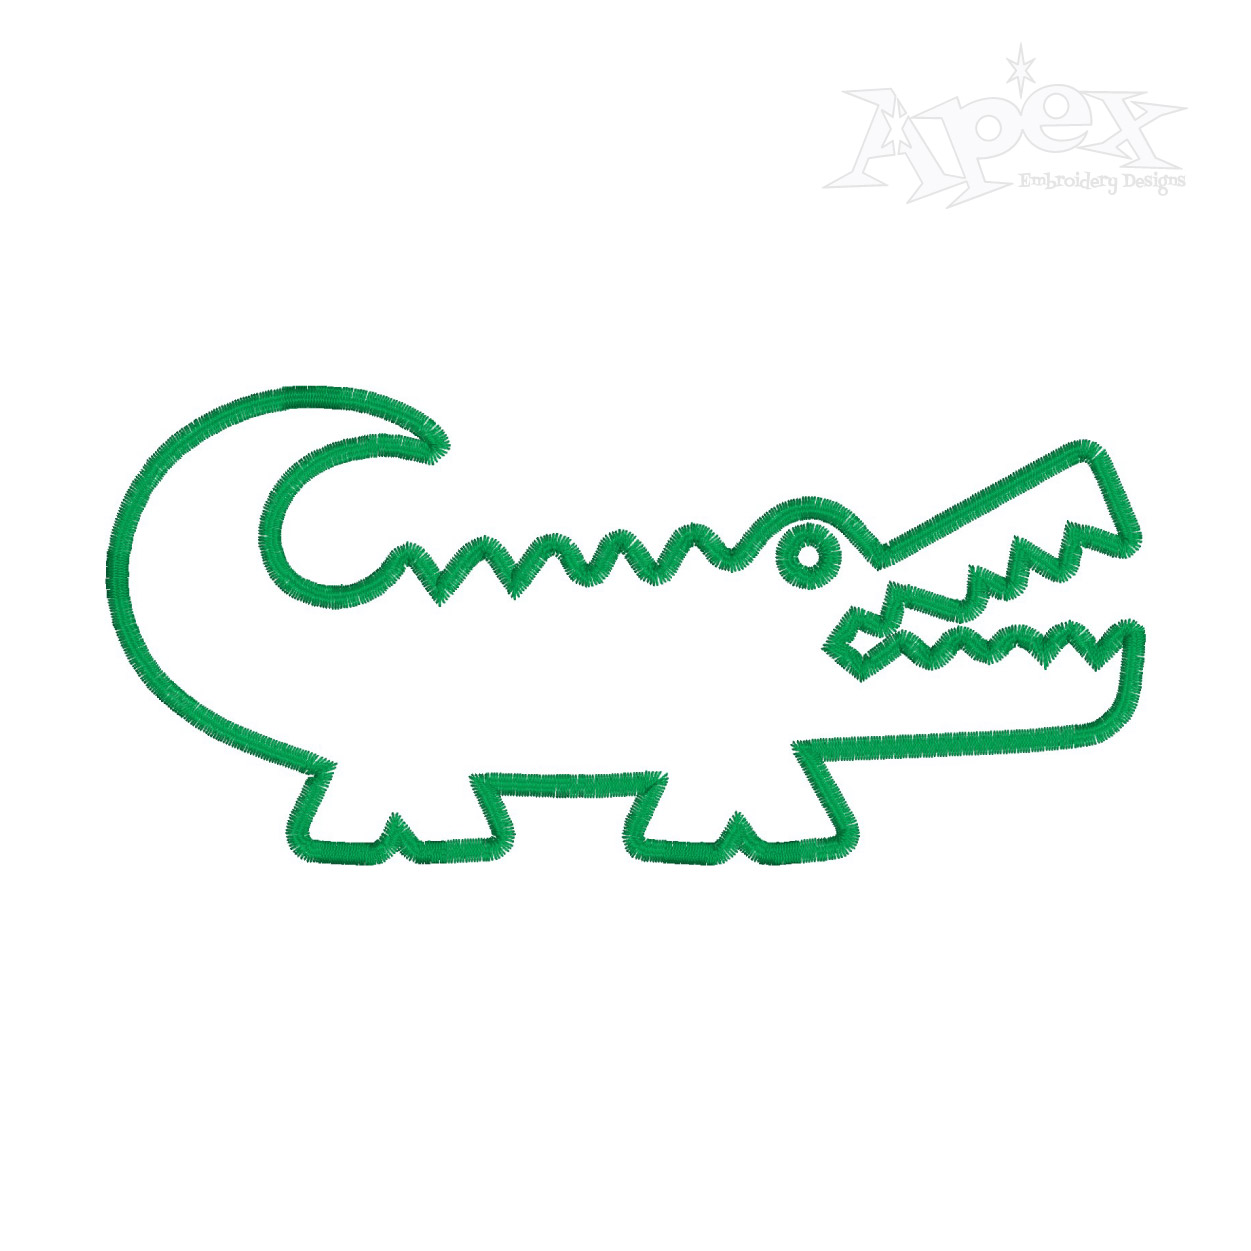 Alligator or Crocodile Applique Embroidery Designs